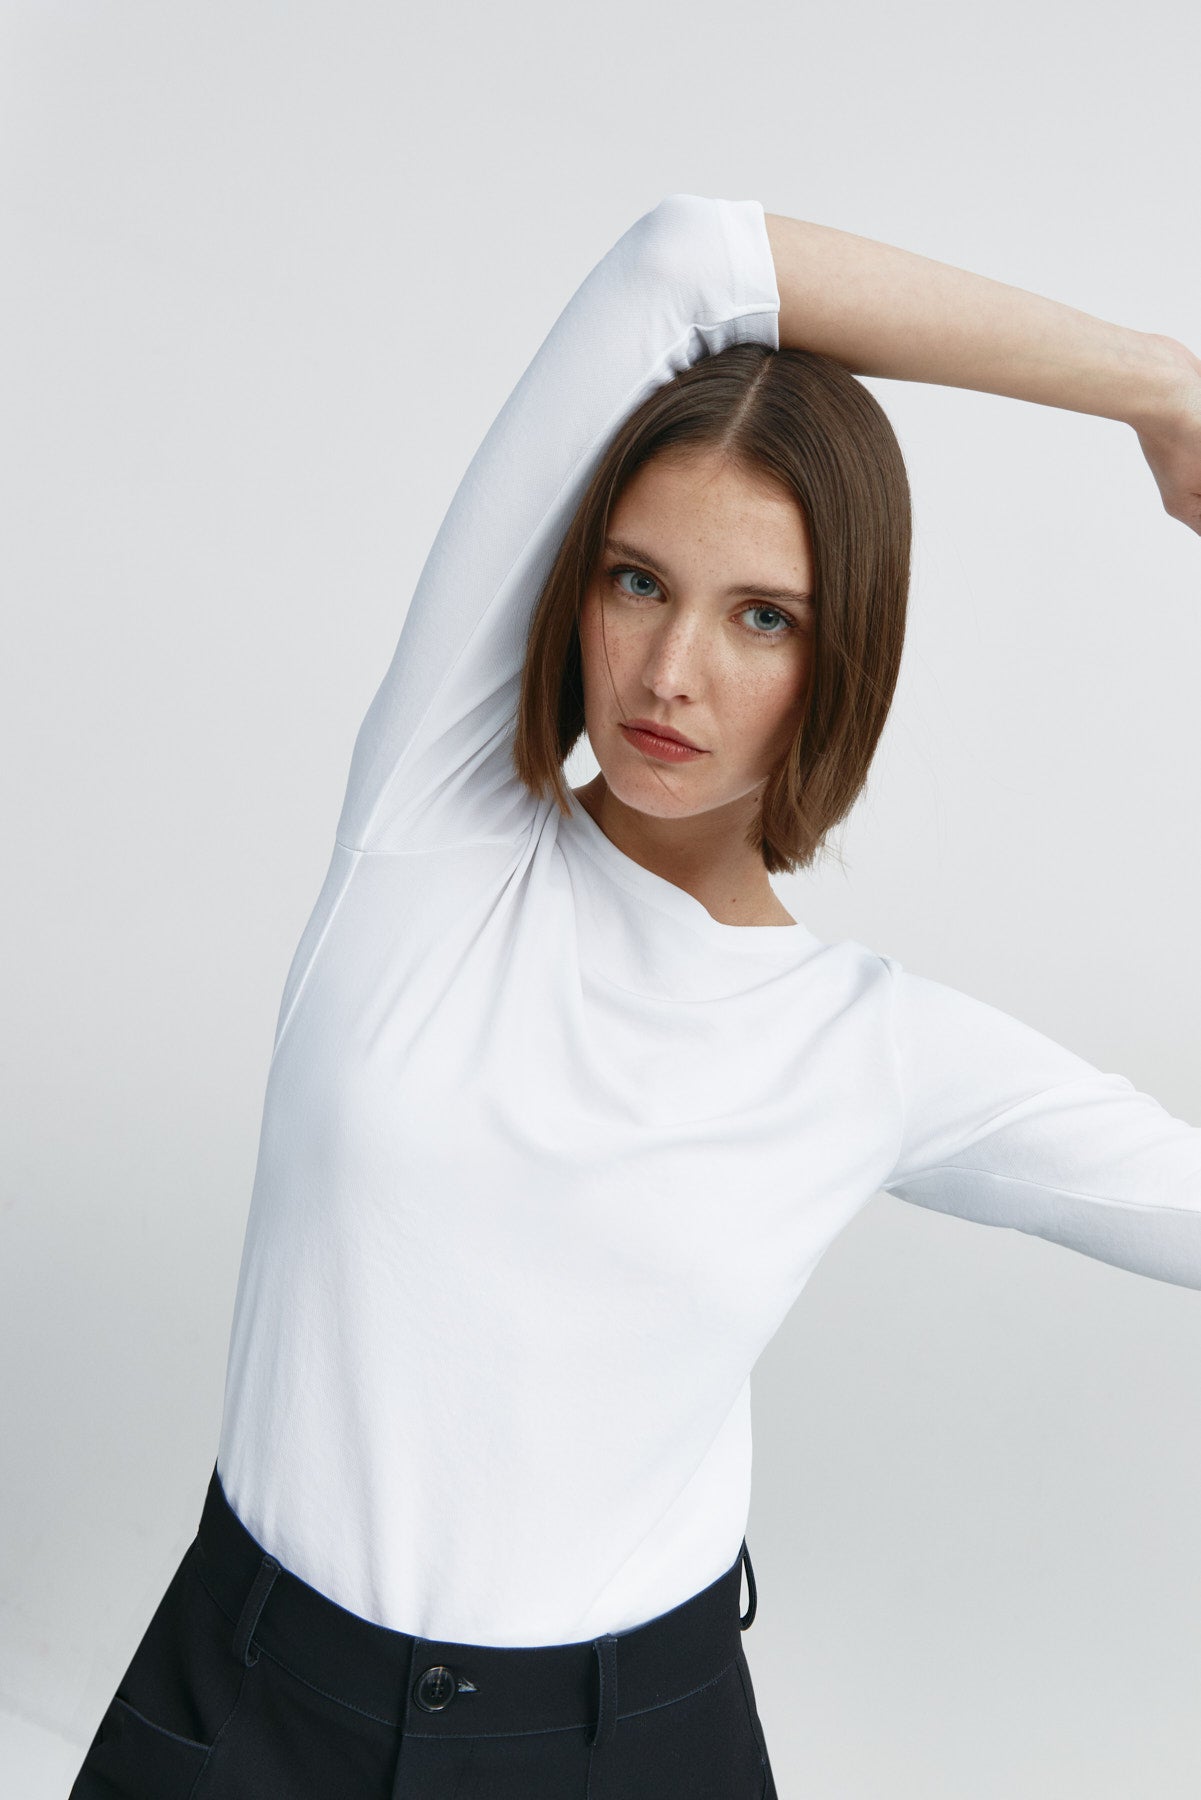 Camiseta para mujer con manga 3/4 y escote barco en color blanco. Prenda básica perfecta para cualquier ocasión. Foto flexibilidad